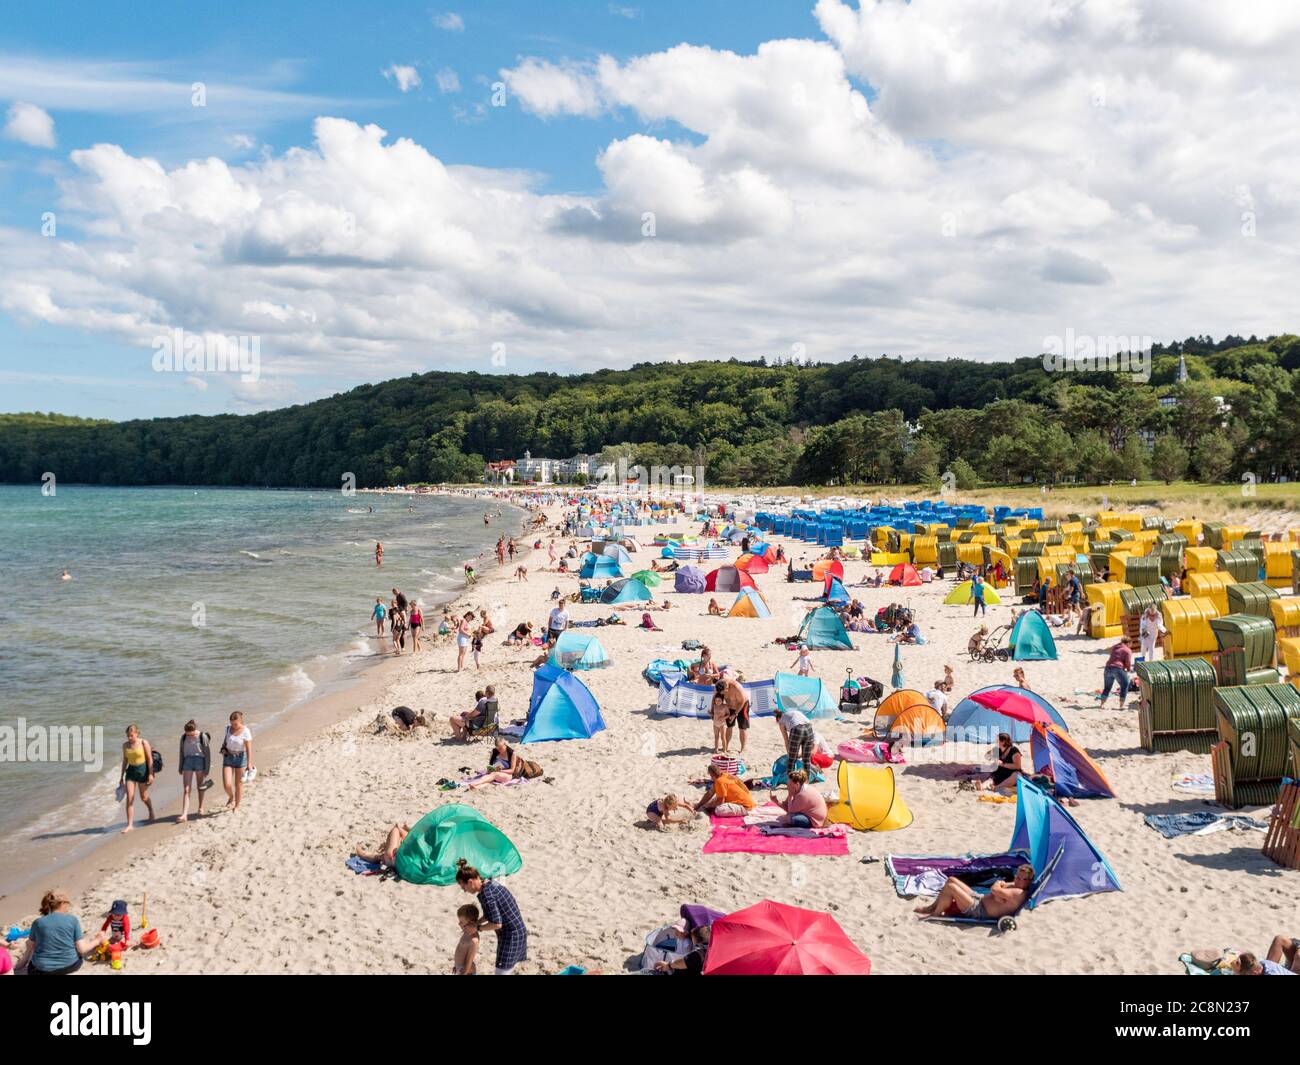 Strand in Binz auf der Insel Rügen an der Ostsee mit vielen Touristen am Badestrand während des Urlaubs in den Sommerferien, Strandkörbe mit Badegäste Banque D'Images